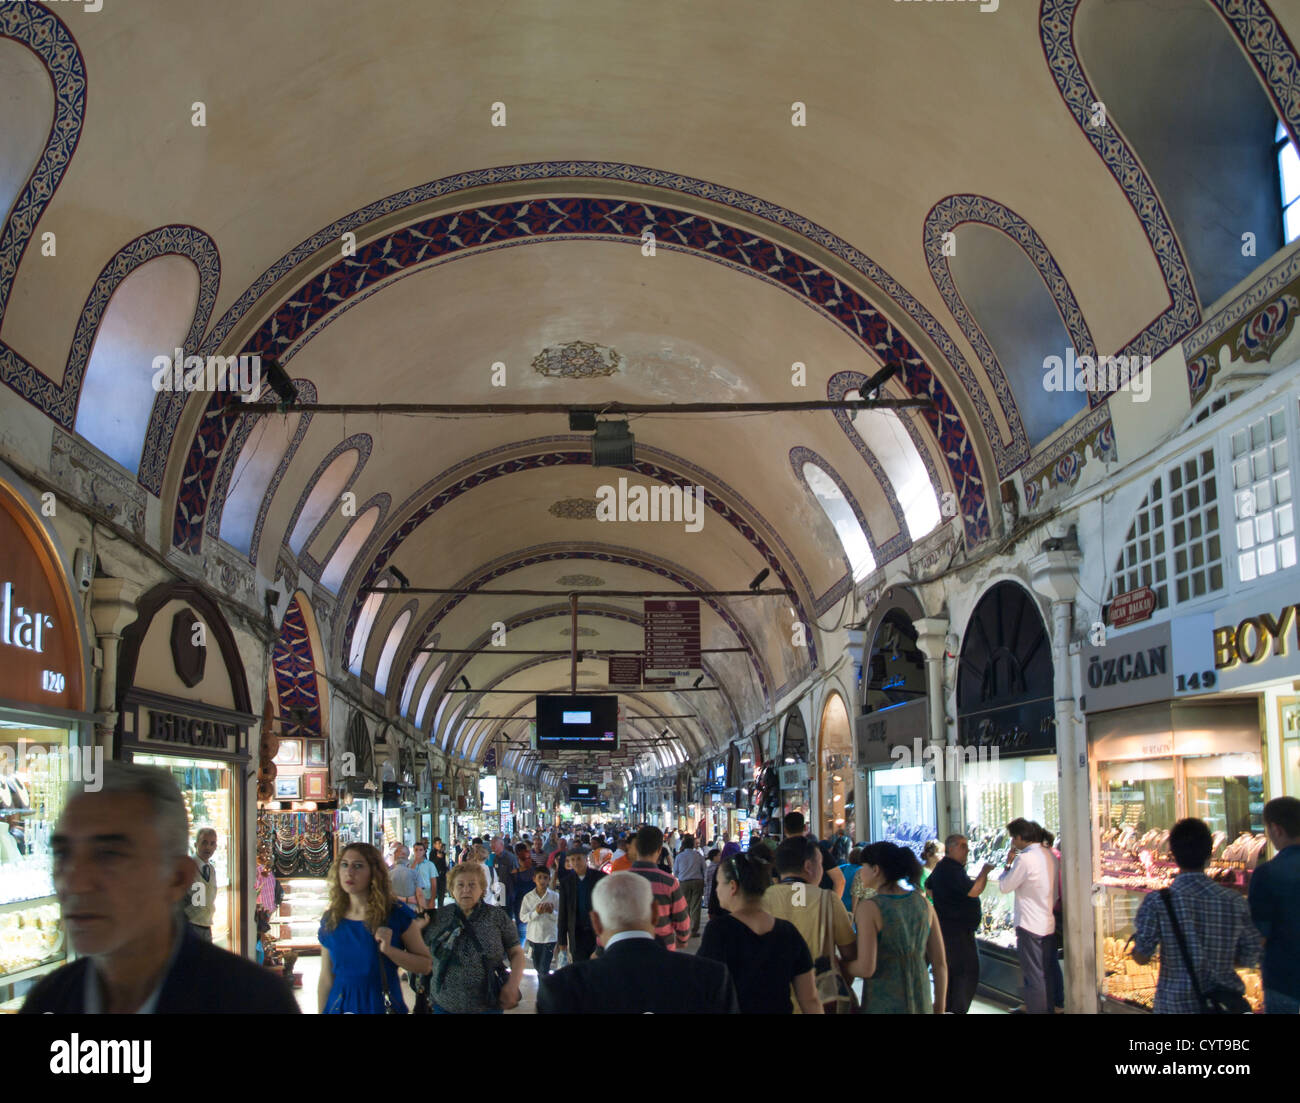 Kapalicarsi, gran bazar o mercado cubierto de Estambul Turquía abastece a todos los gustos turísticos, arcos y multitud de tiendas Foto de stock